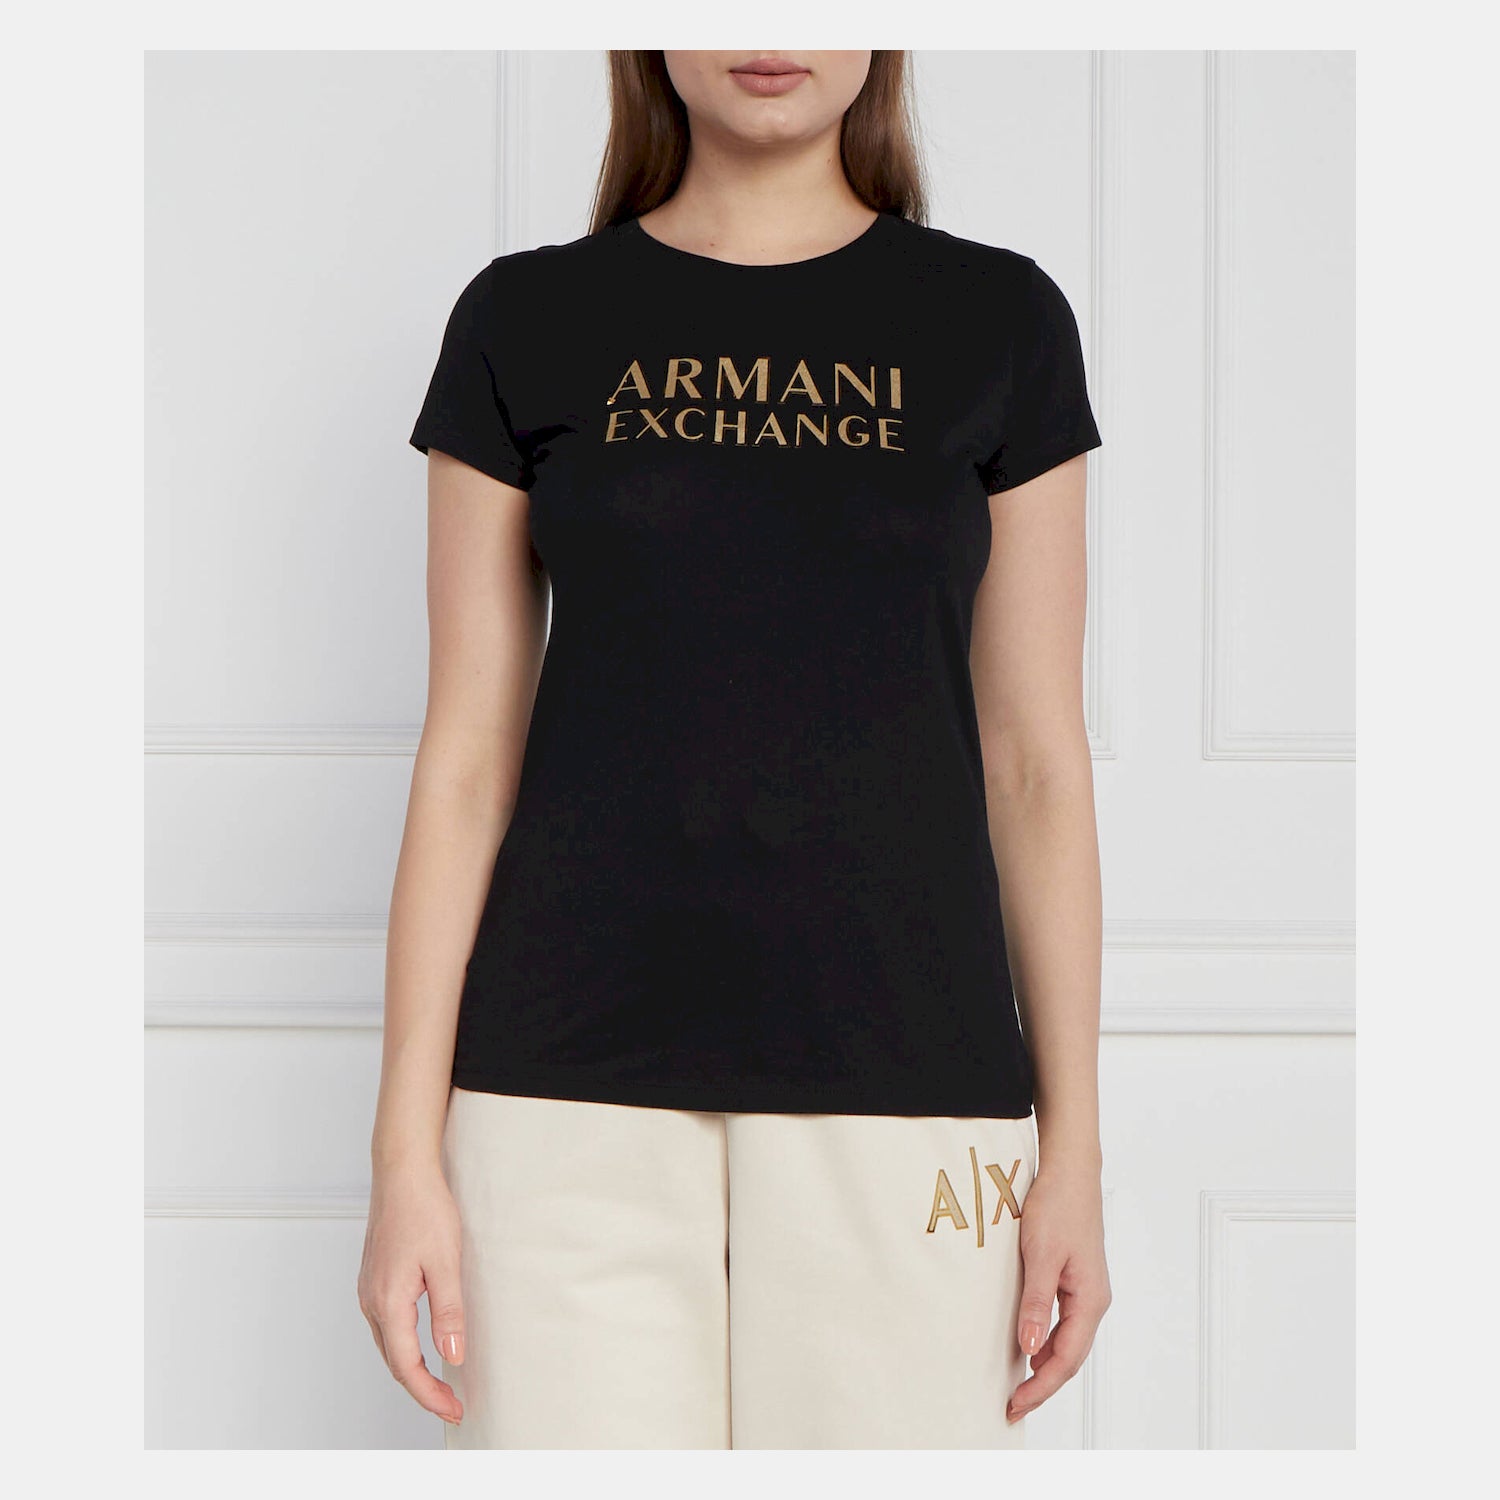 Armani Exchange T Shirt 6ryt07 Yj8qz Black Preto_shot1